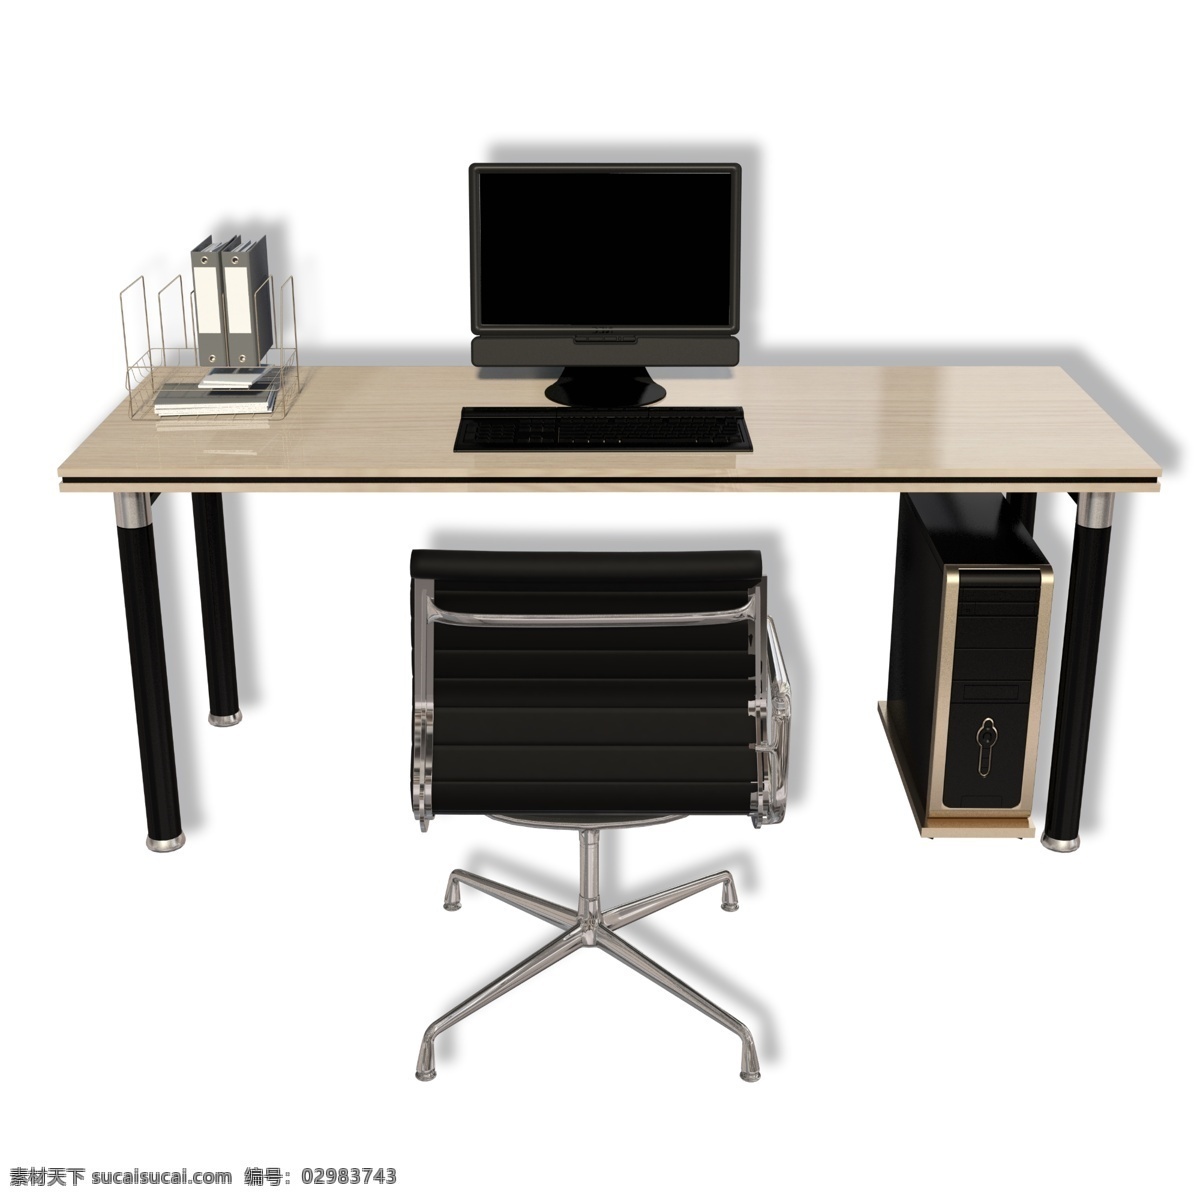 休闲 电脑 办公 桌子 电脑桌 办公桌 椅子 家具 办公用品